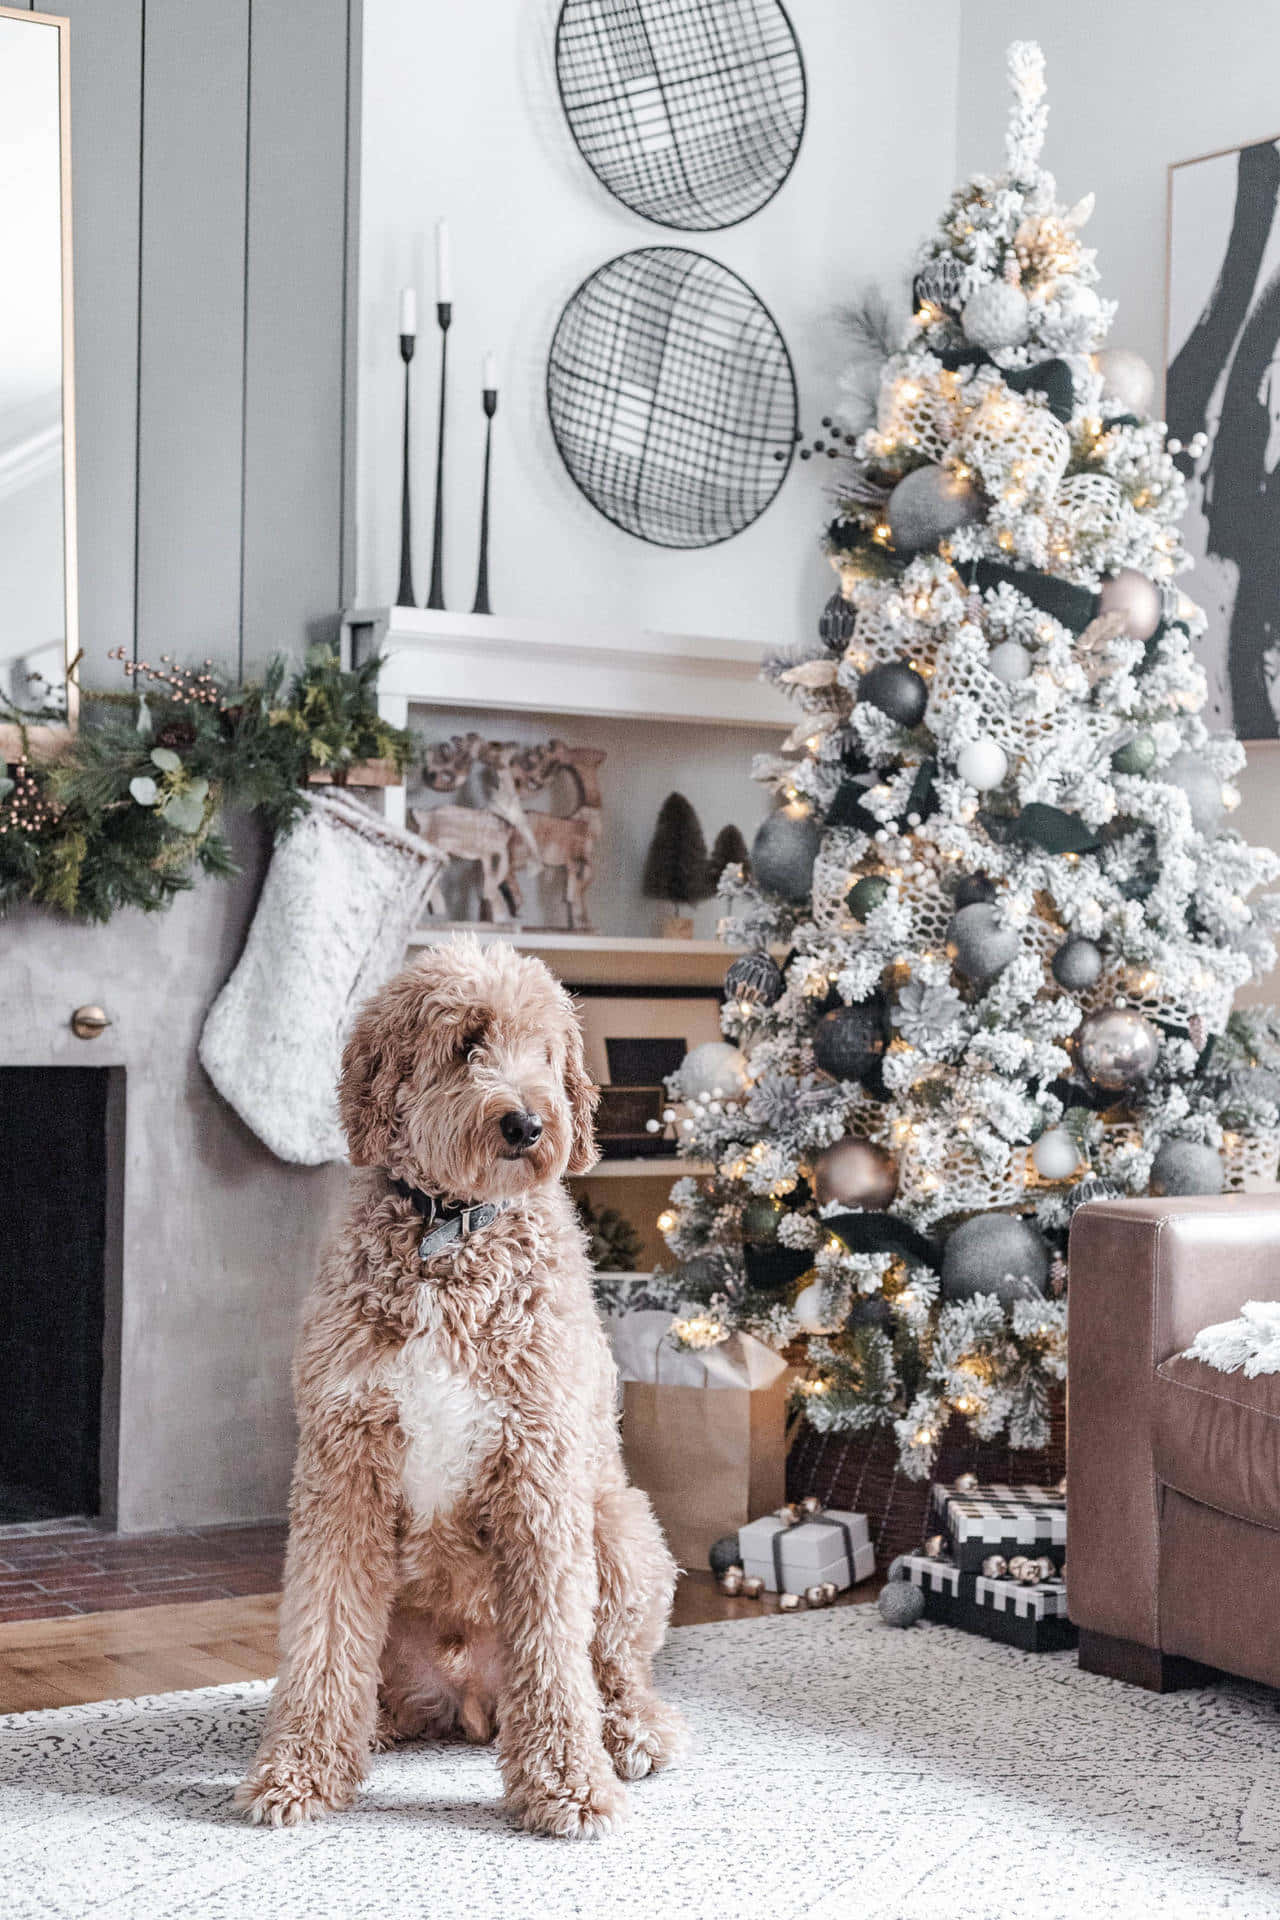 Big Christmas Dog With Tree